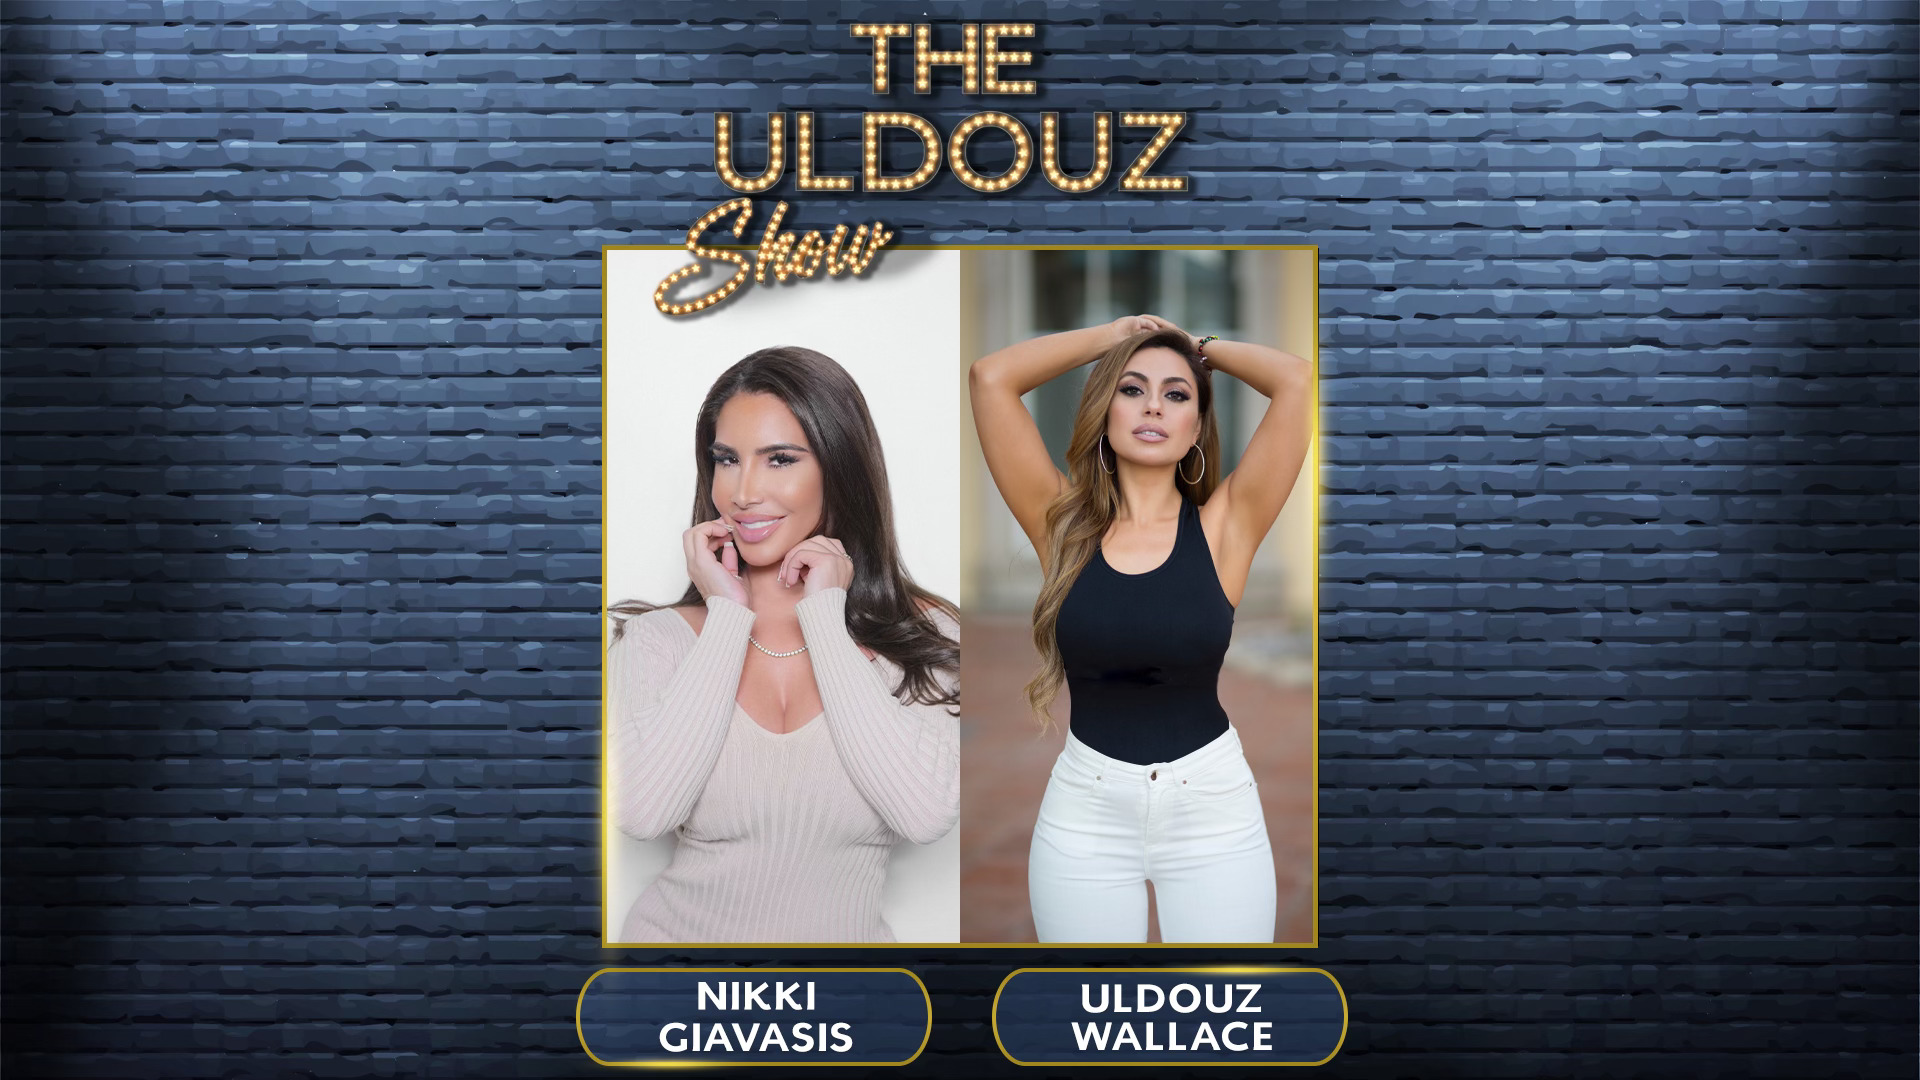 The Uldouz Show with Guest Nikki Giavasis, Author, Actress & Influencer